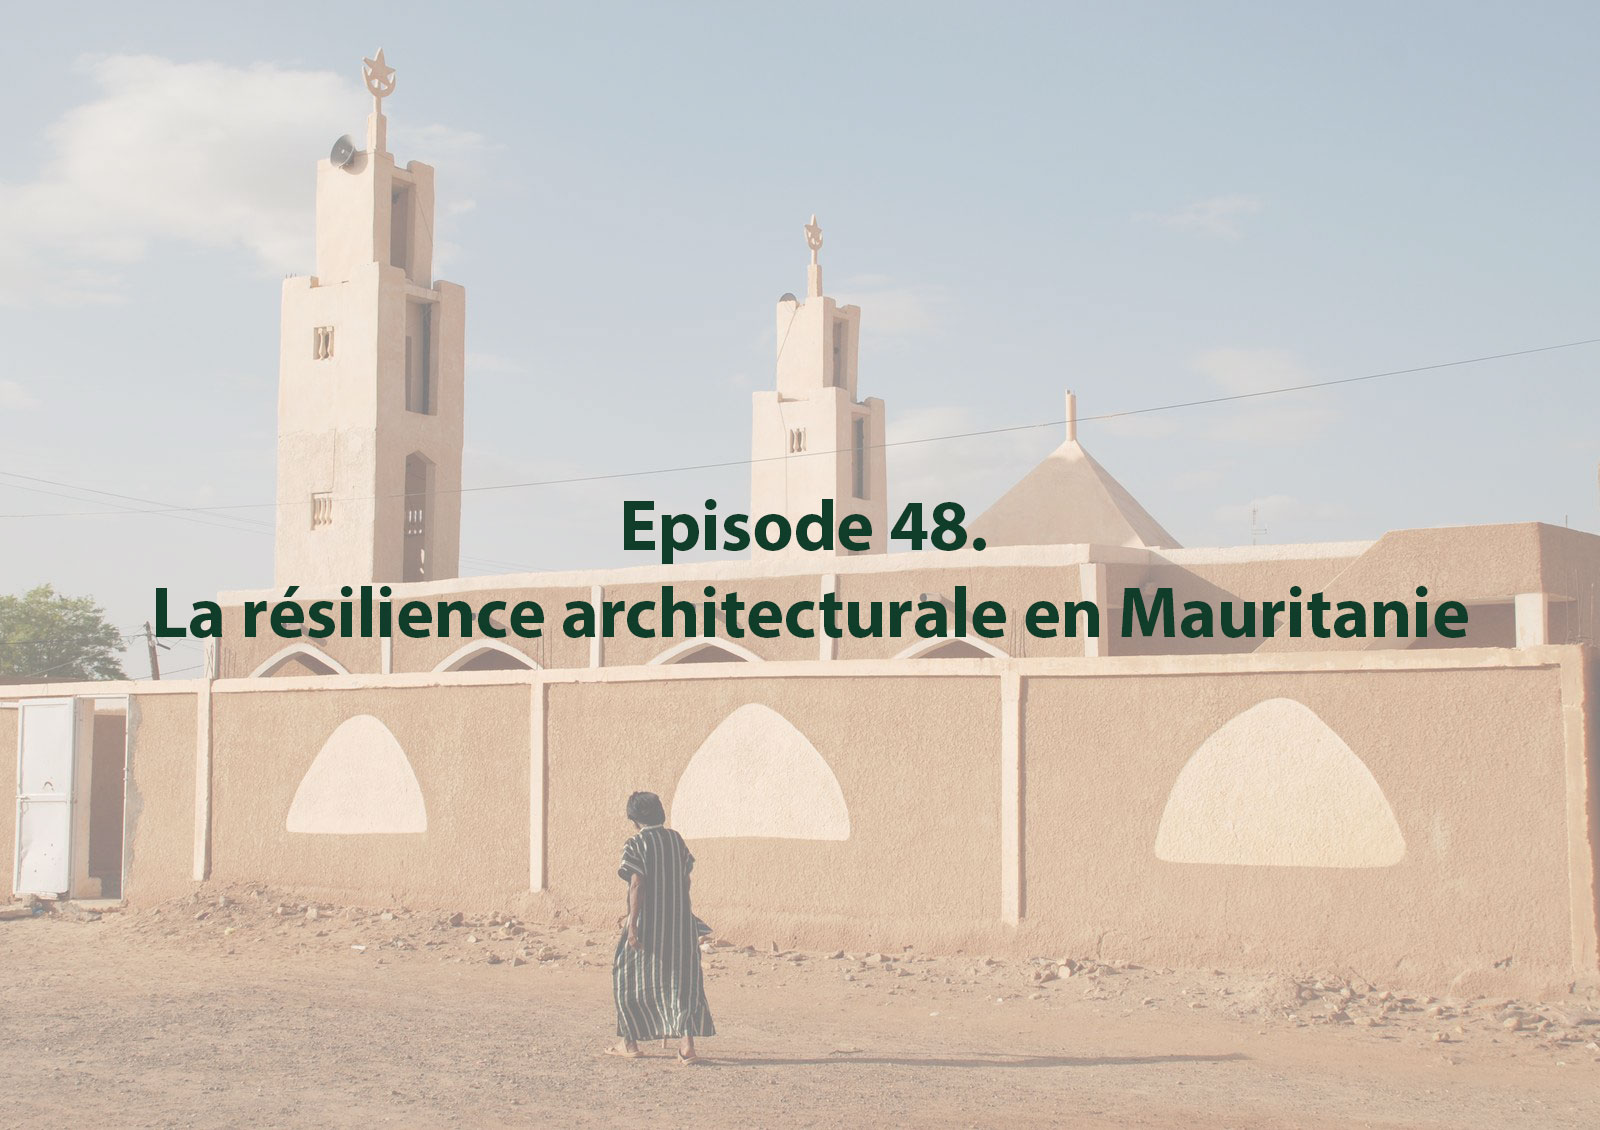 Episode 48. La résilience architecturale en Mauritanie